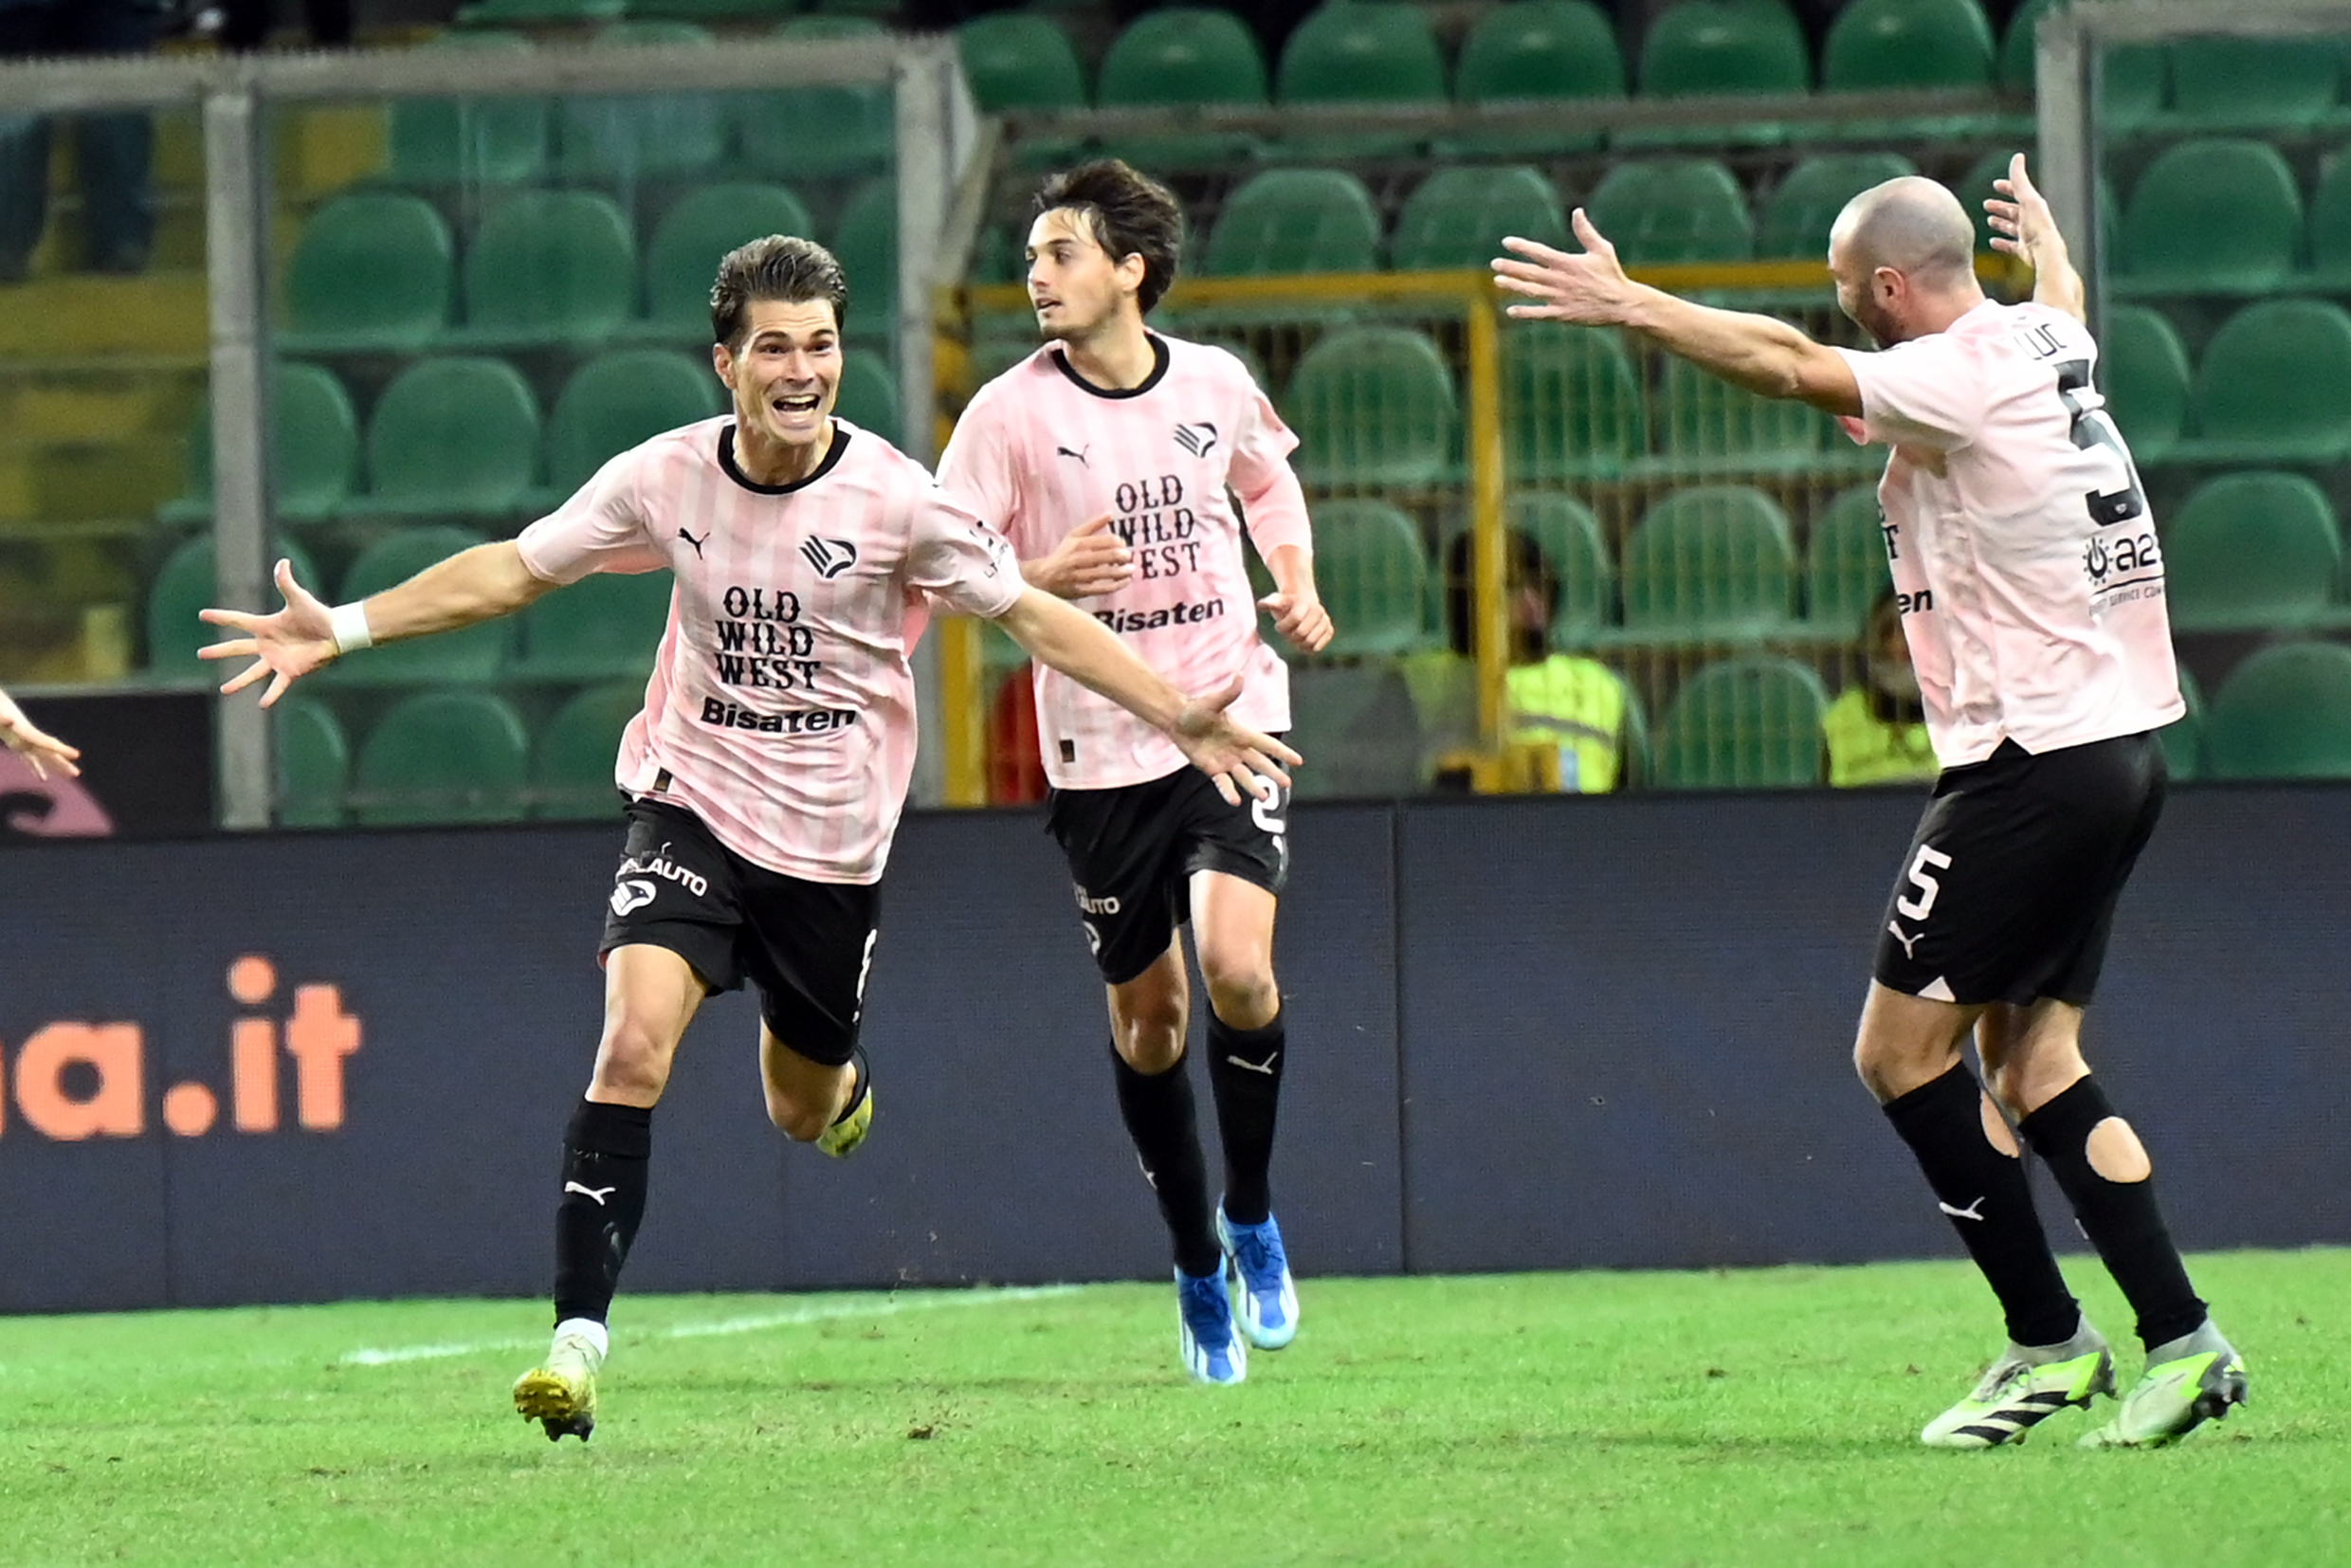 Serie B: Palermo, i miglioramenti nascono dalla fiducia nel tecnico Corini